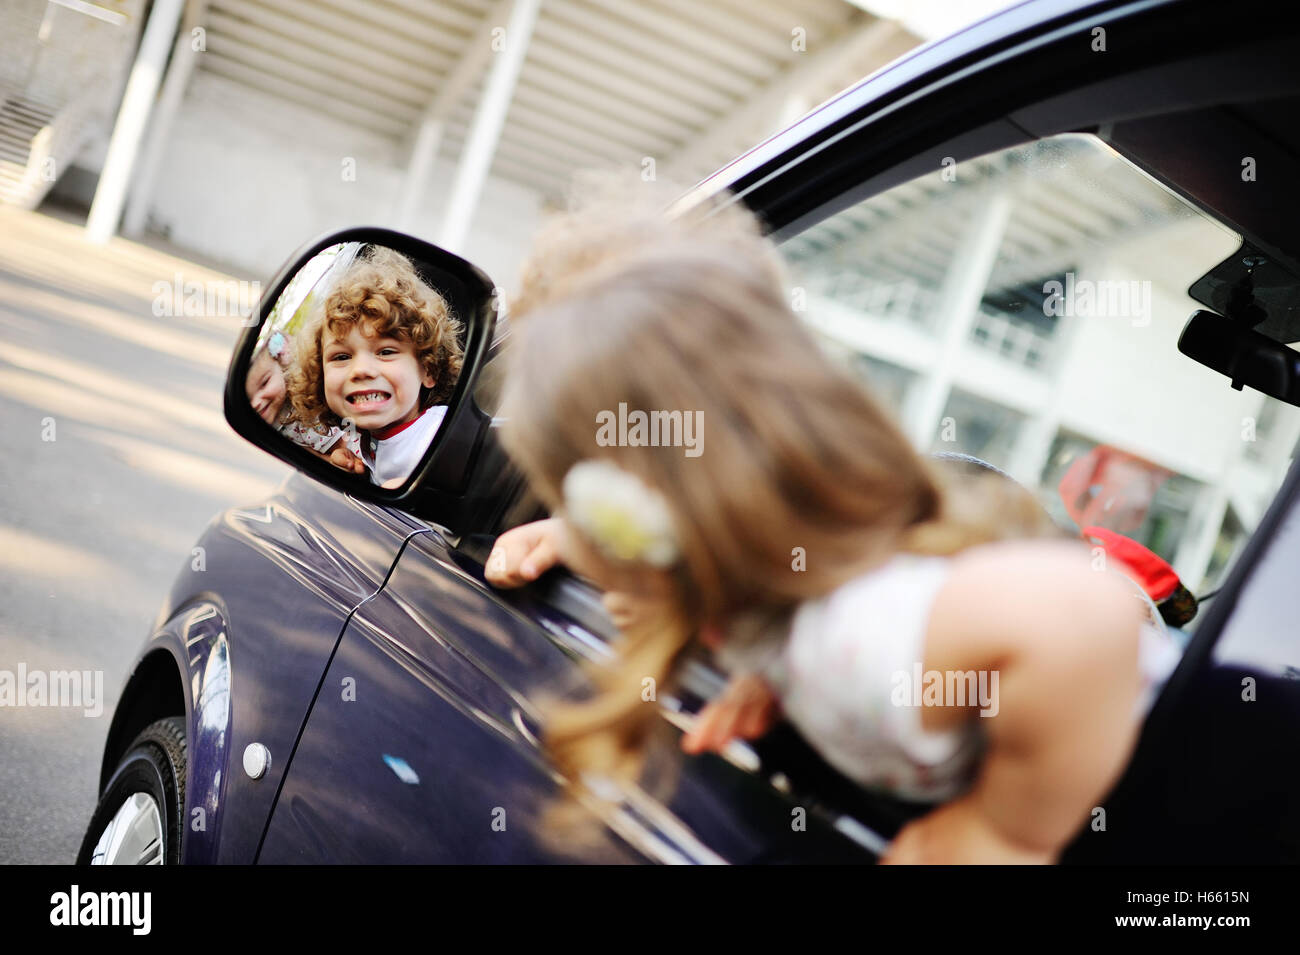 Les enfants donnent de la fenêtre d'une voiture Banque D'Images